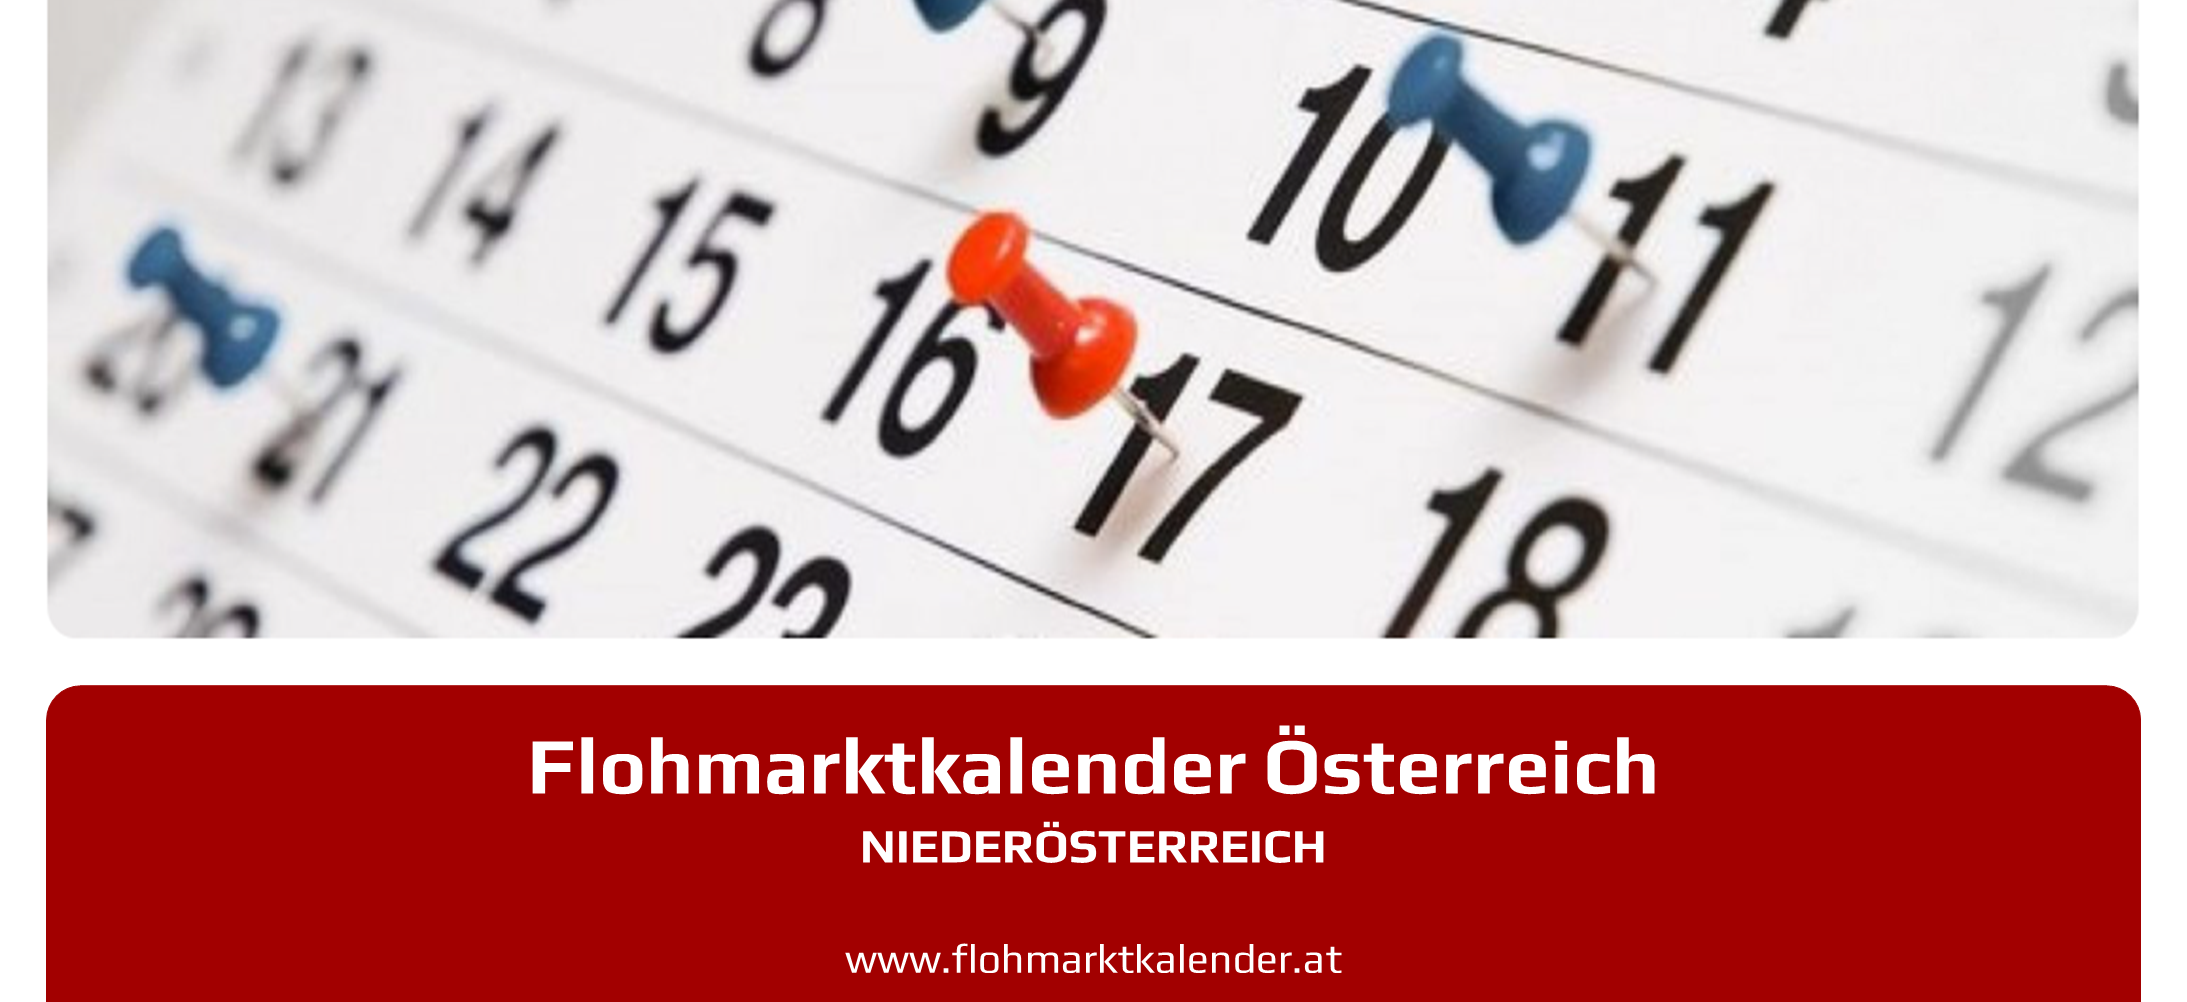 Flohmarktkalender Niederösterreich